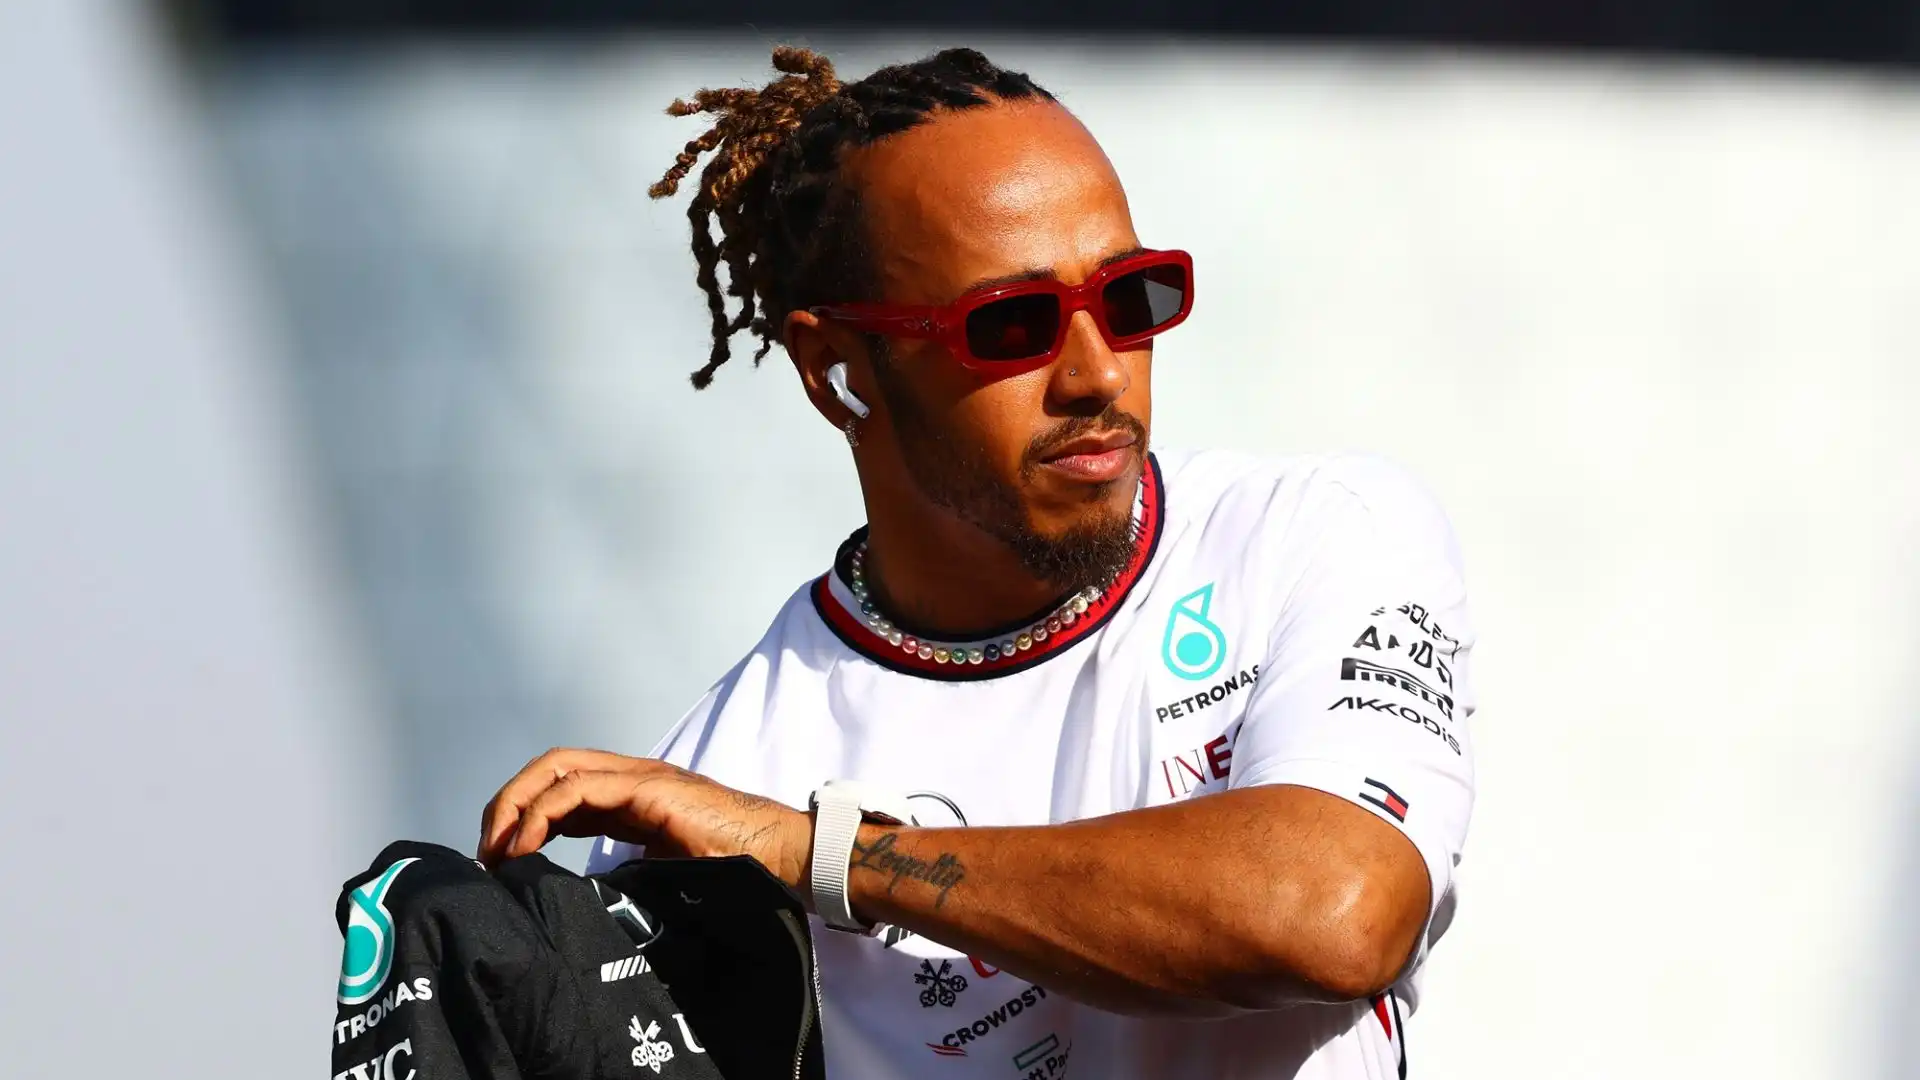 Hamilton potrebbe essere sostituito da Carlos Sainz o dal giovane astro nascente Andrea Kimi Antonelli. Improbabile un arrivo di Verstappen